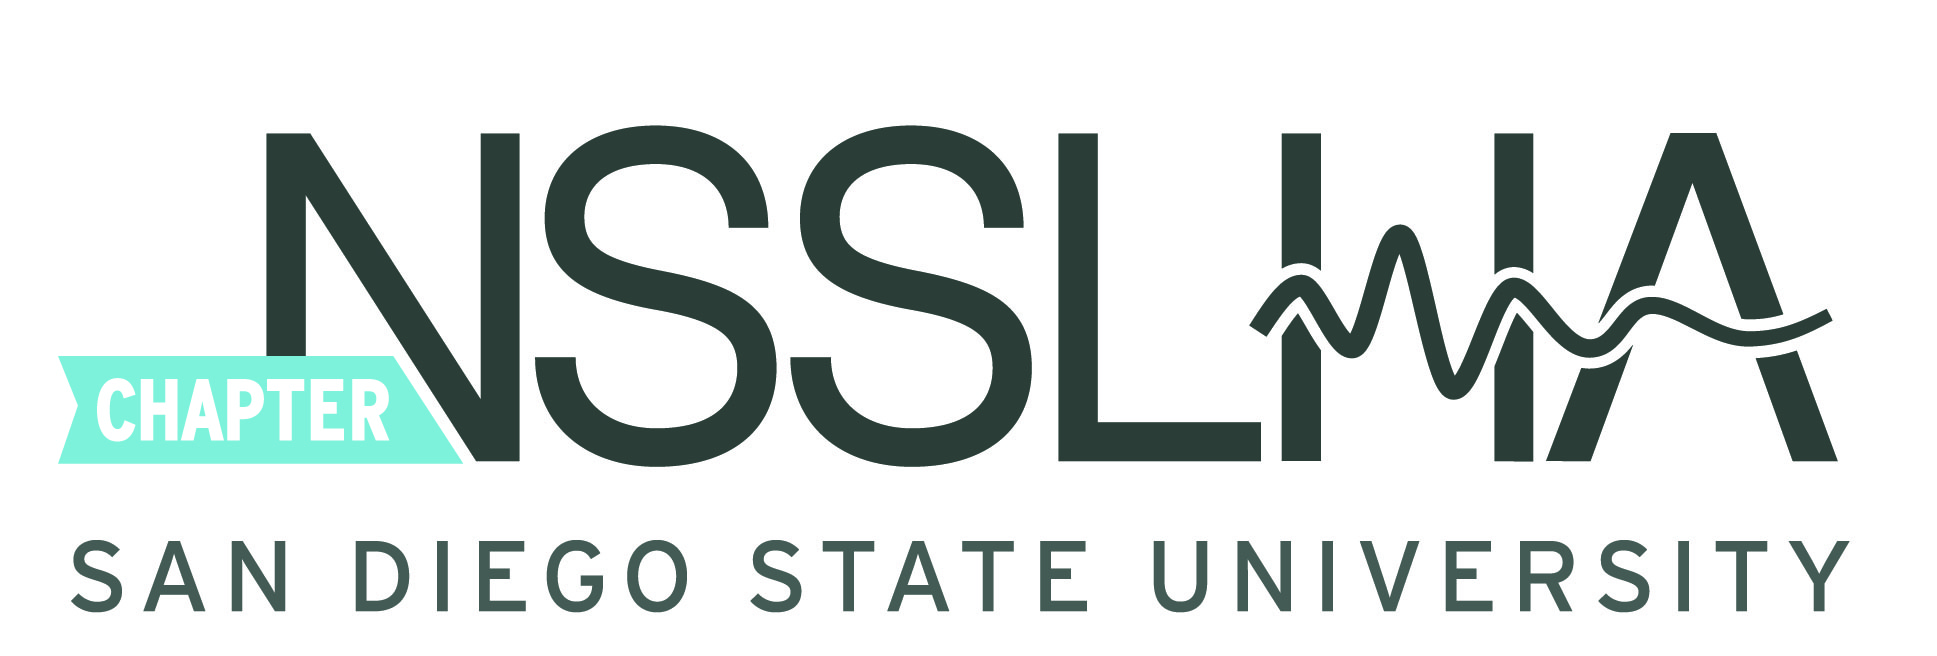 NSSHLA Logo